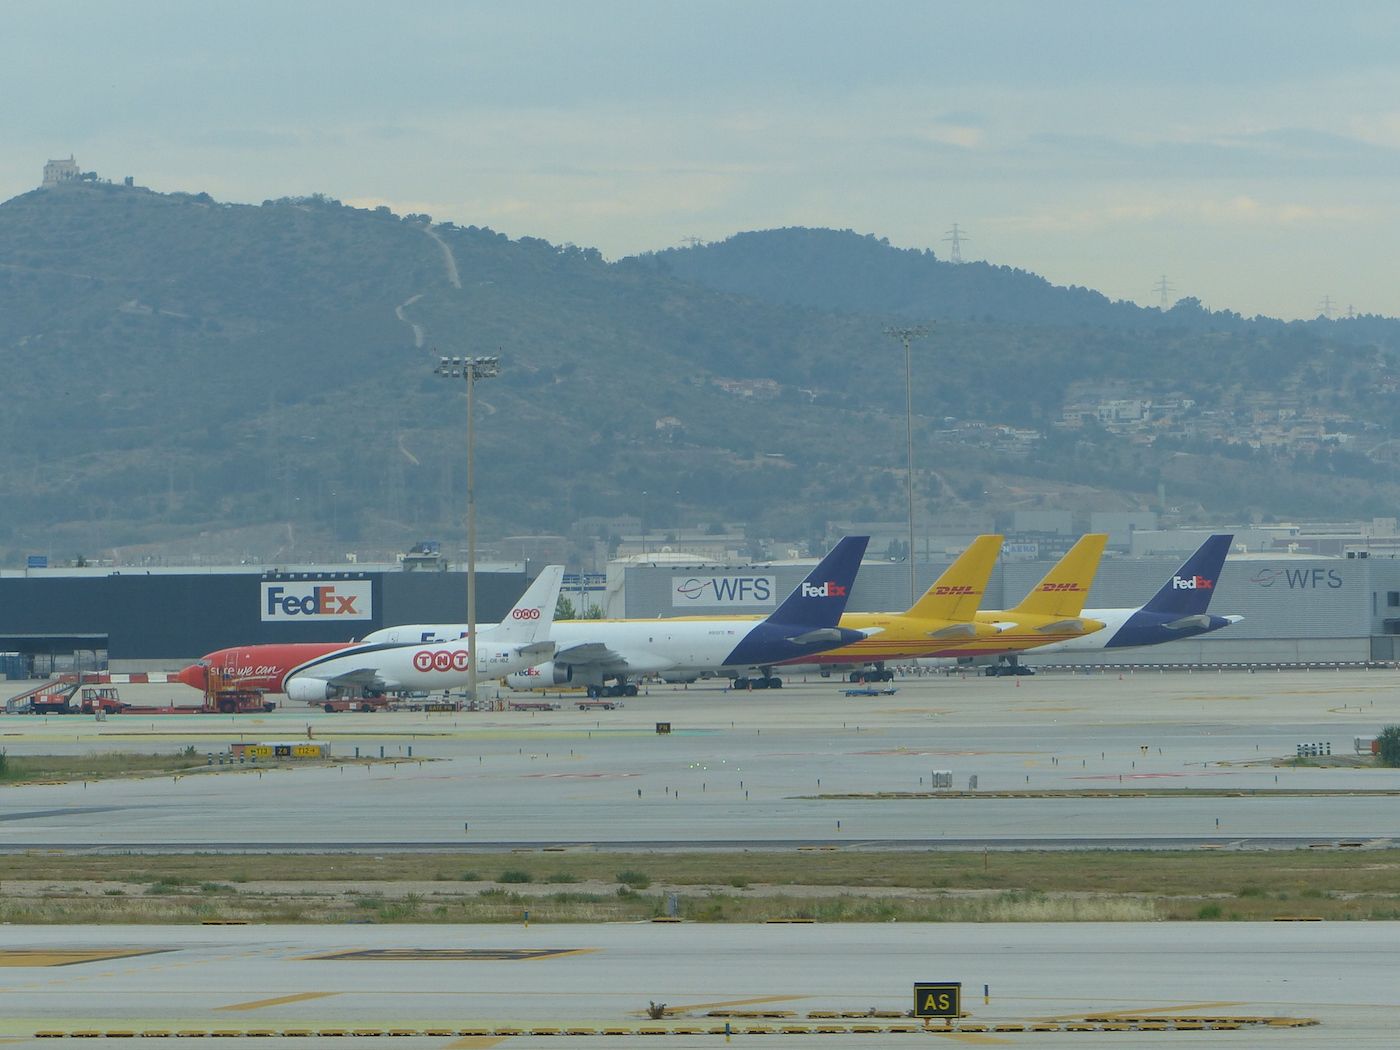 aviones-de-fedex-dhl-y-tnt-en-aeropuerto-barcelona